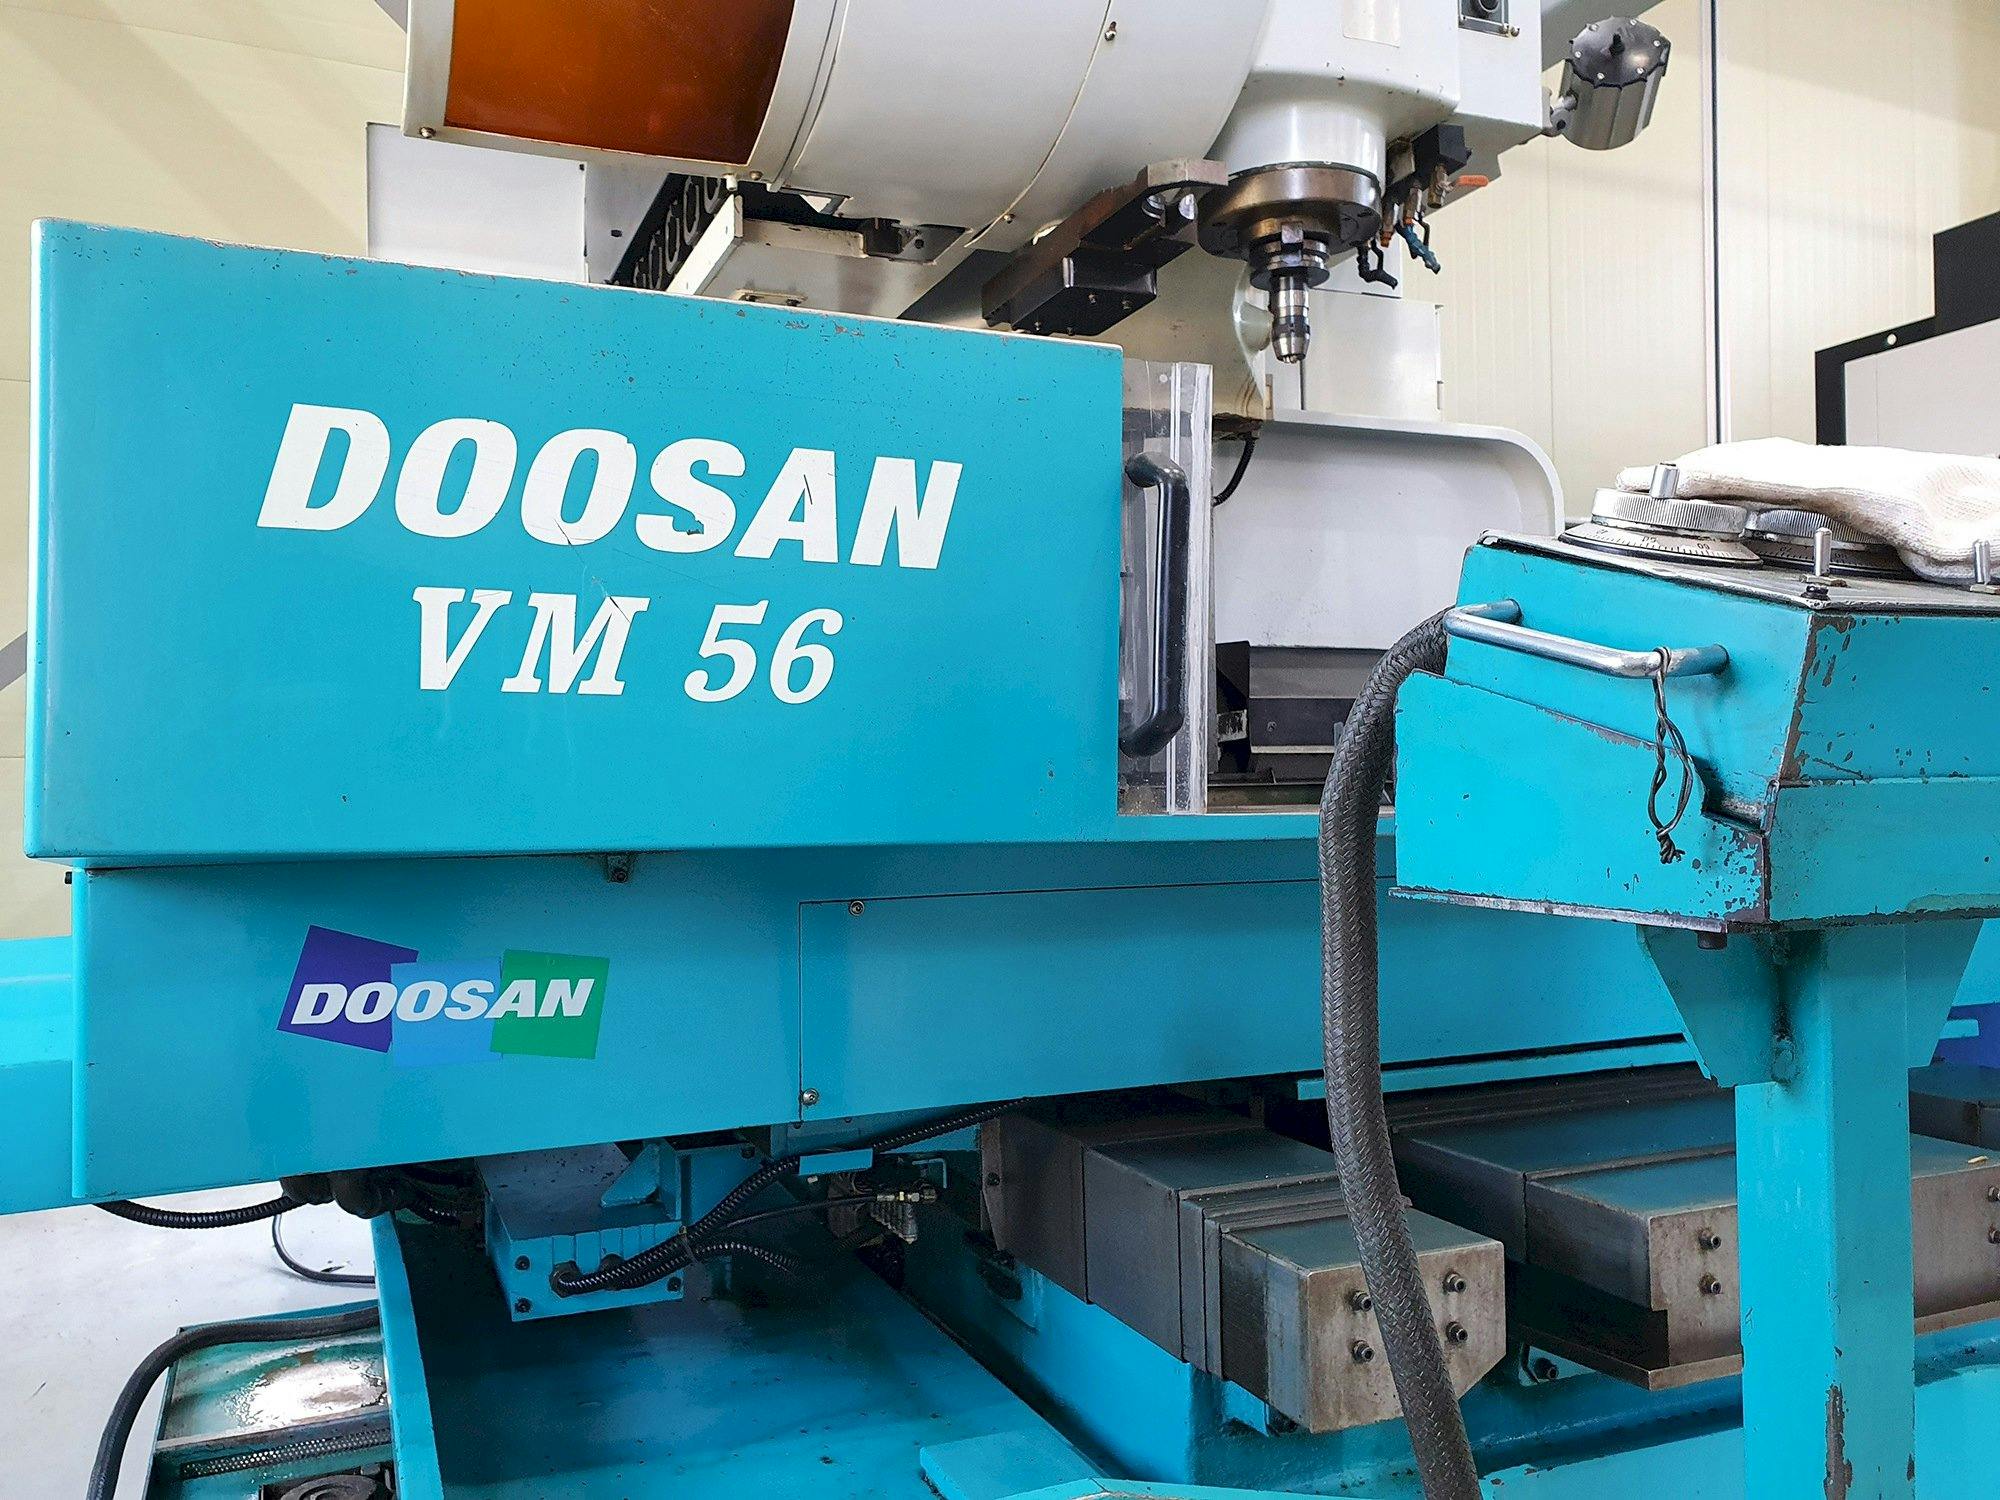 Vooraanzicht  van Doosan VM56  machine